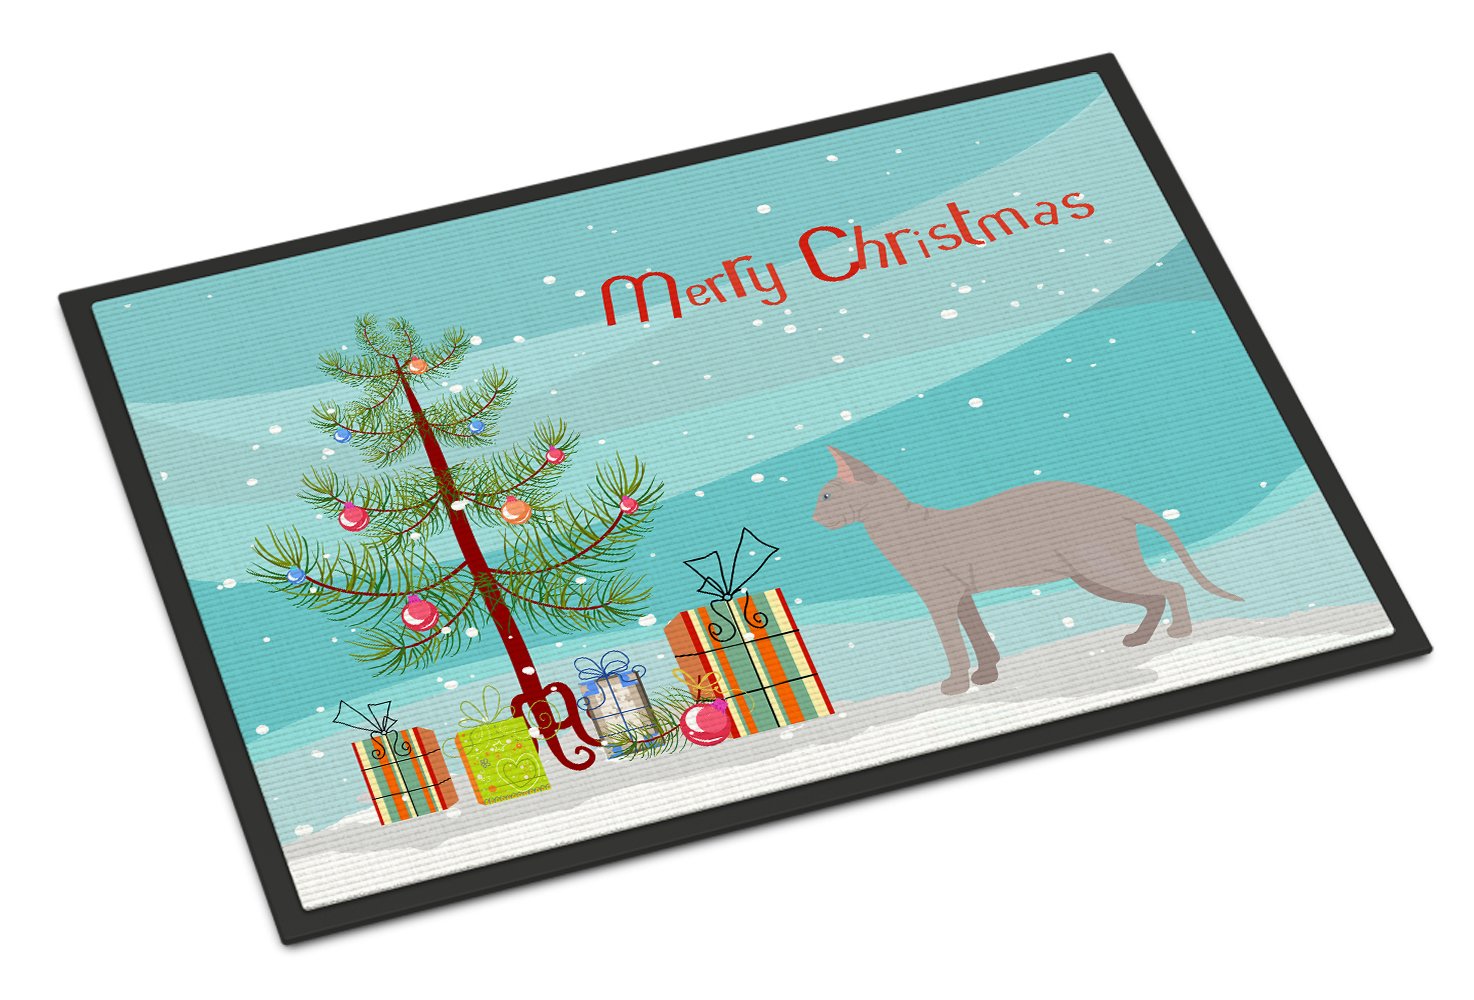 Don Sphynx Cat Merry Christmas Indoor or Outdoor Mat 24x36 CK4604JMAT by Caroline's Treasures